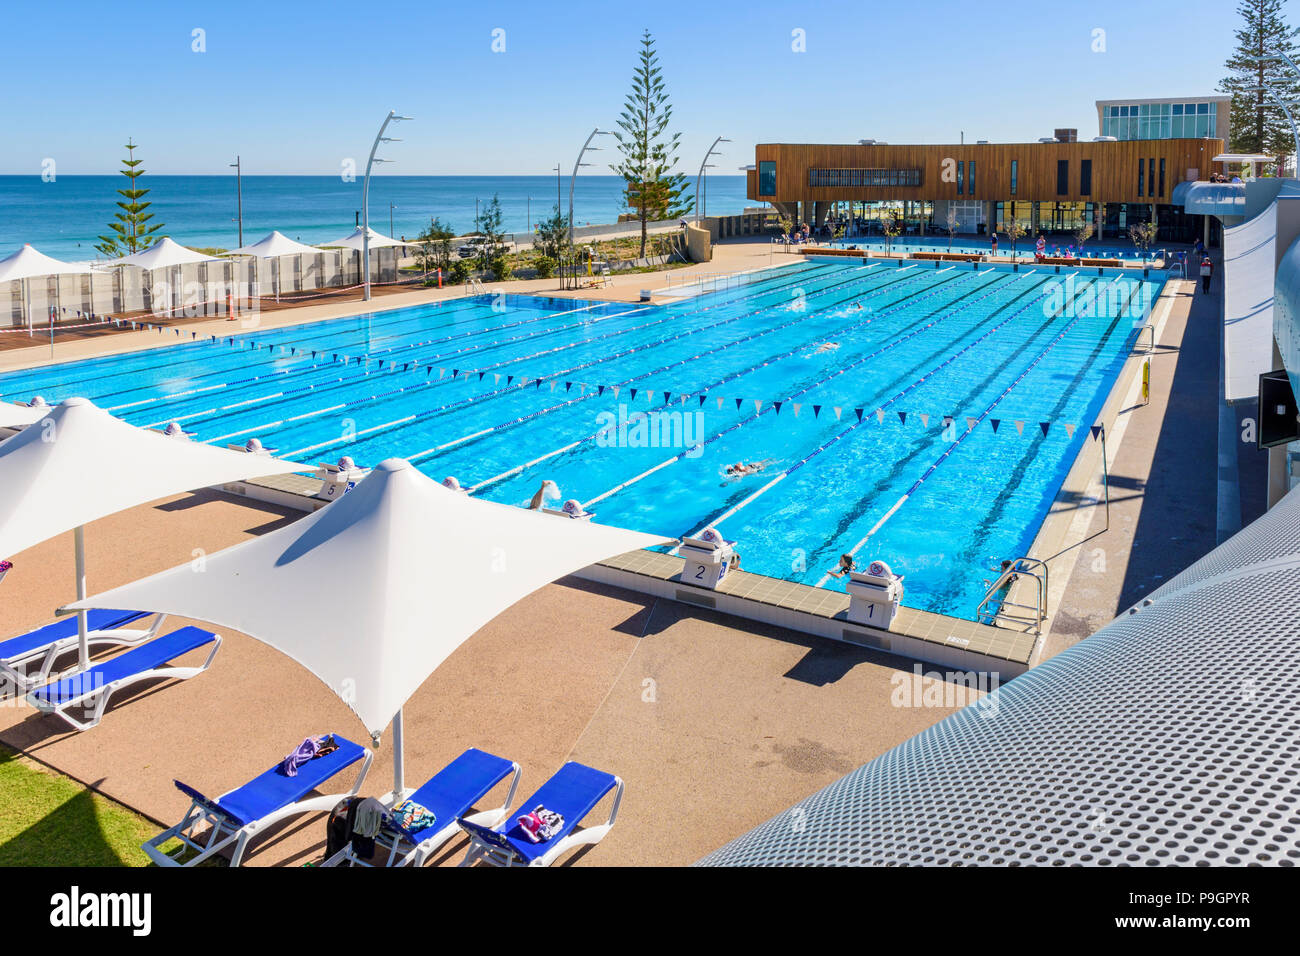 The new Scarborough Beach Pool at Scarborough Beach, Perth, Western Australia Stock Photo